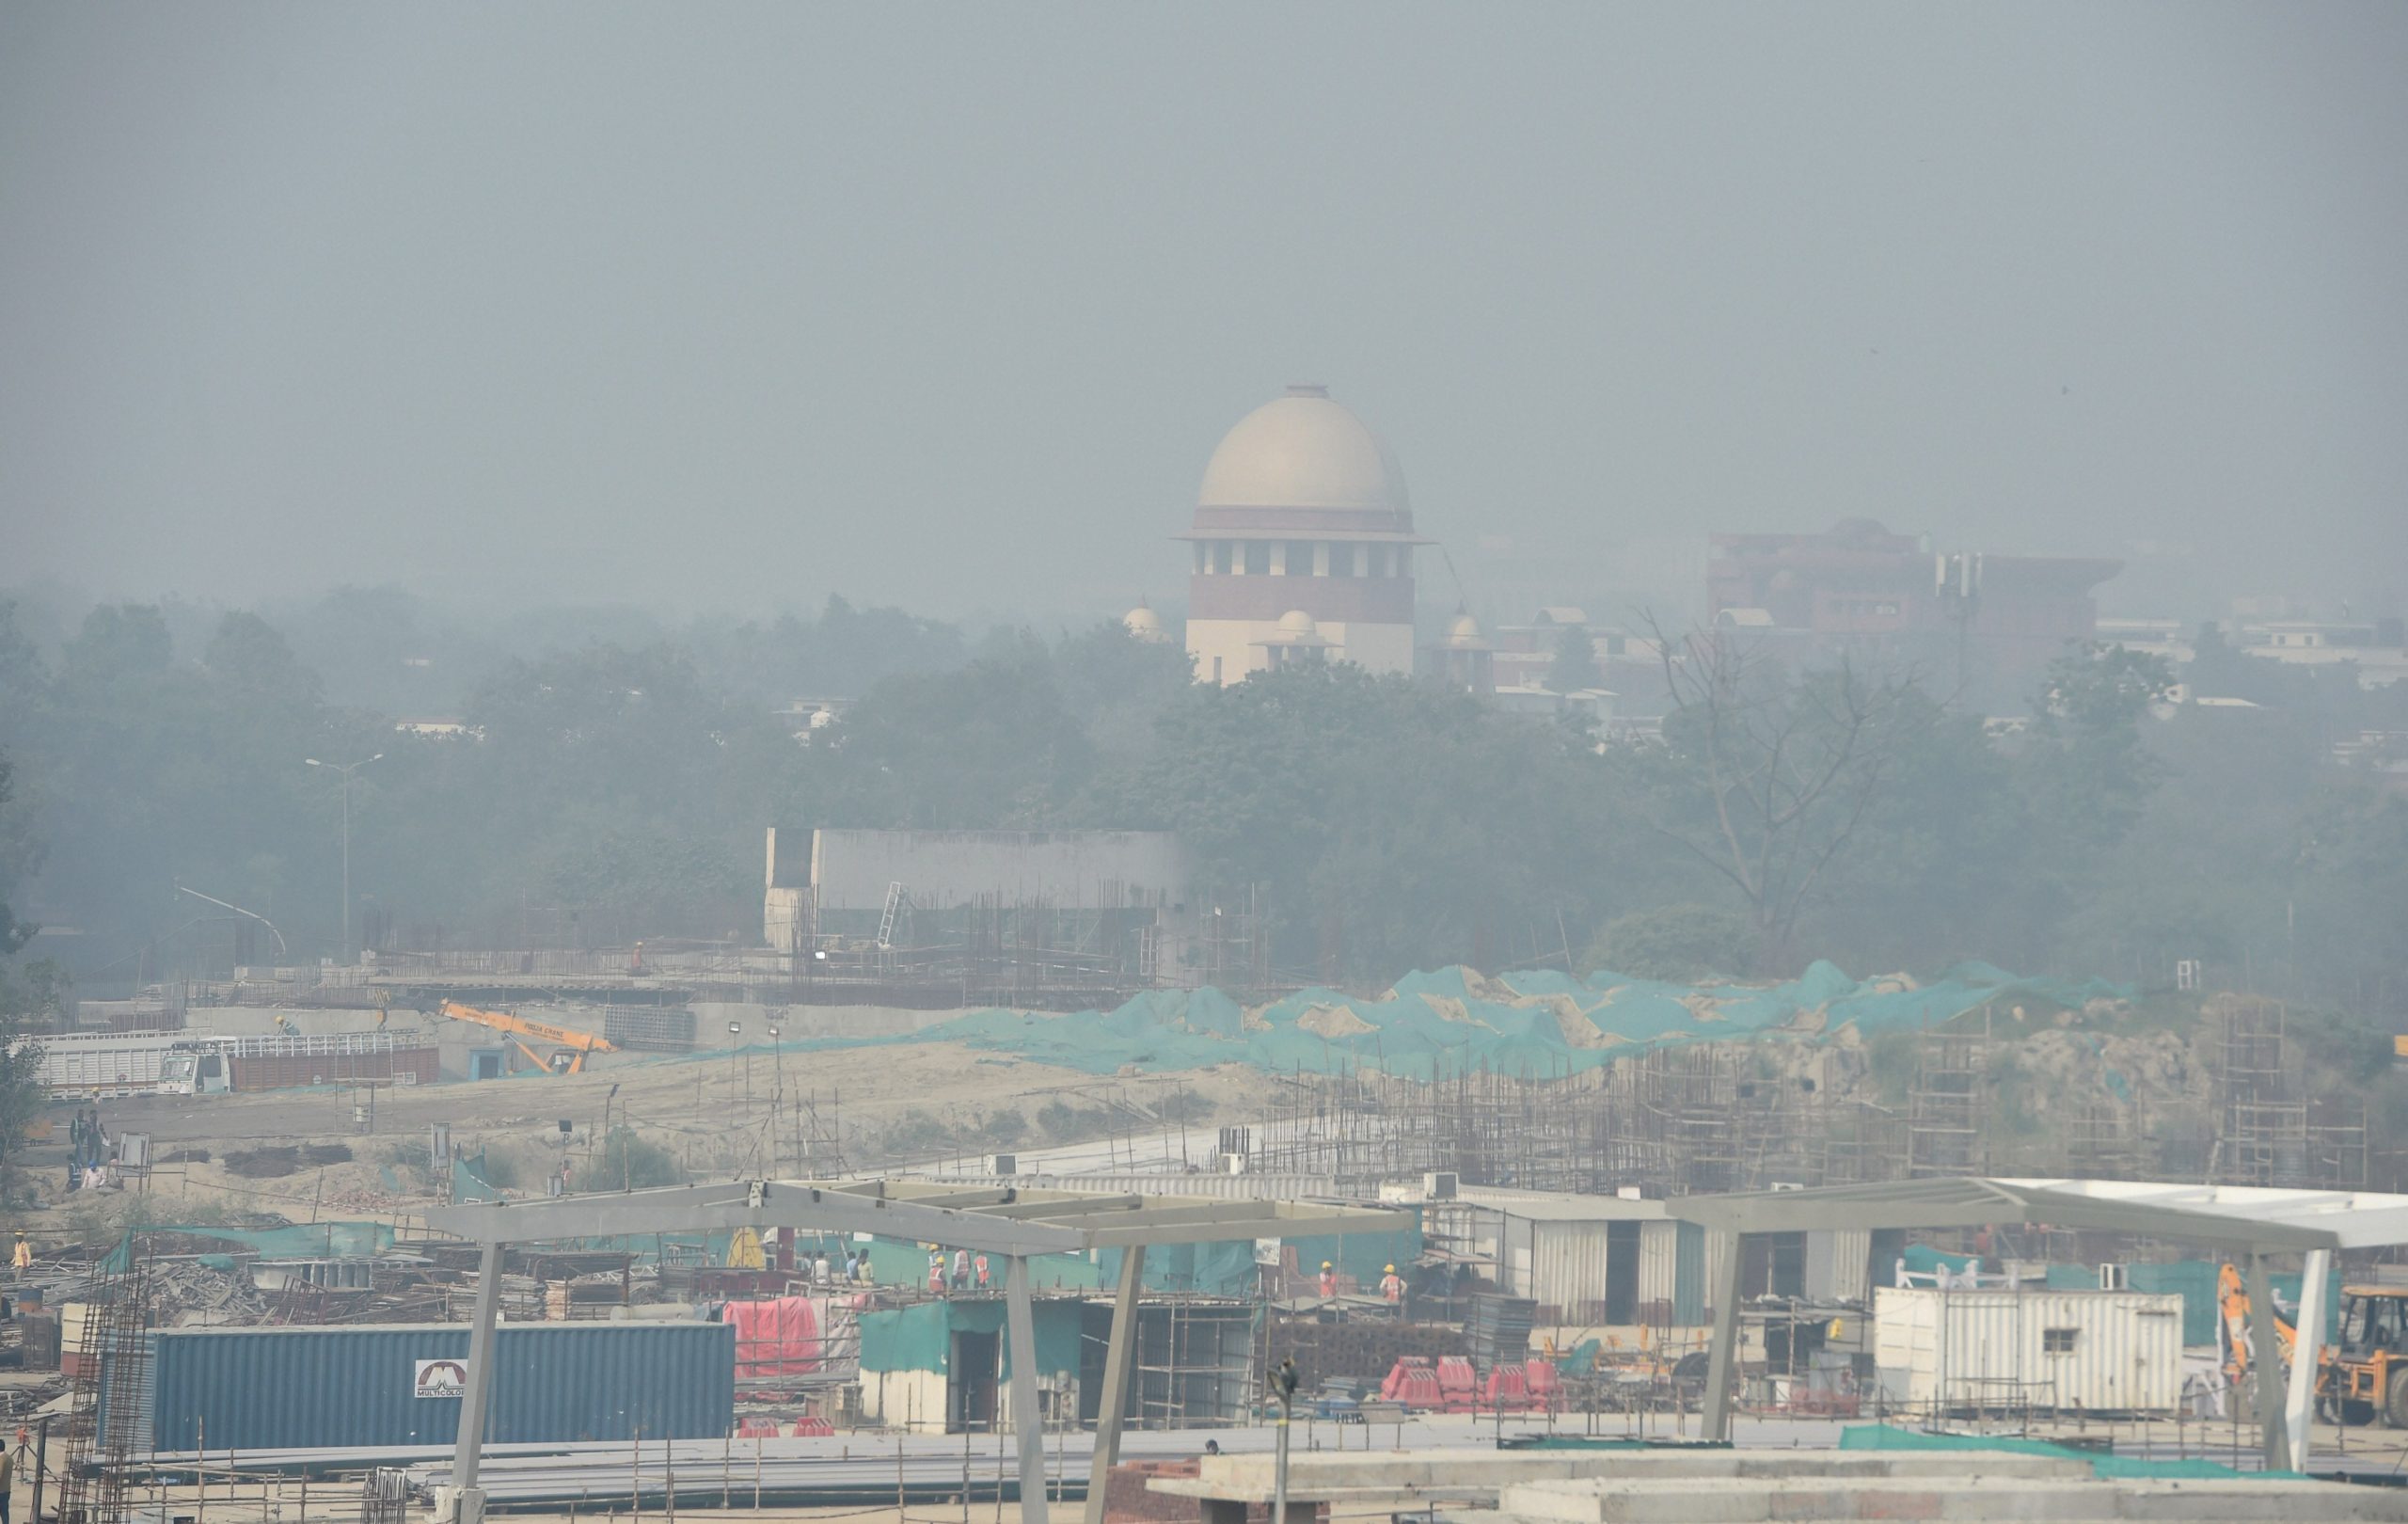 दिल्ली-एनसीआर में वायु गुणवत्ता ‘गंभीर’ श्रेणी में, सुप्रीम कोर्ट ने कहा- आपात स्थिति है